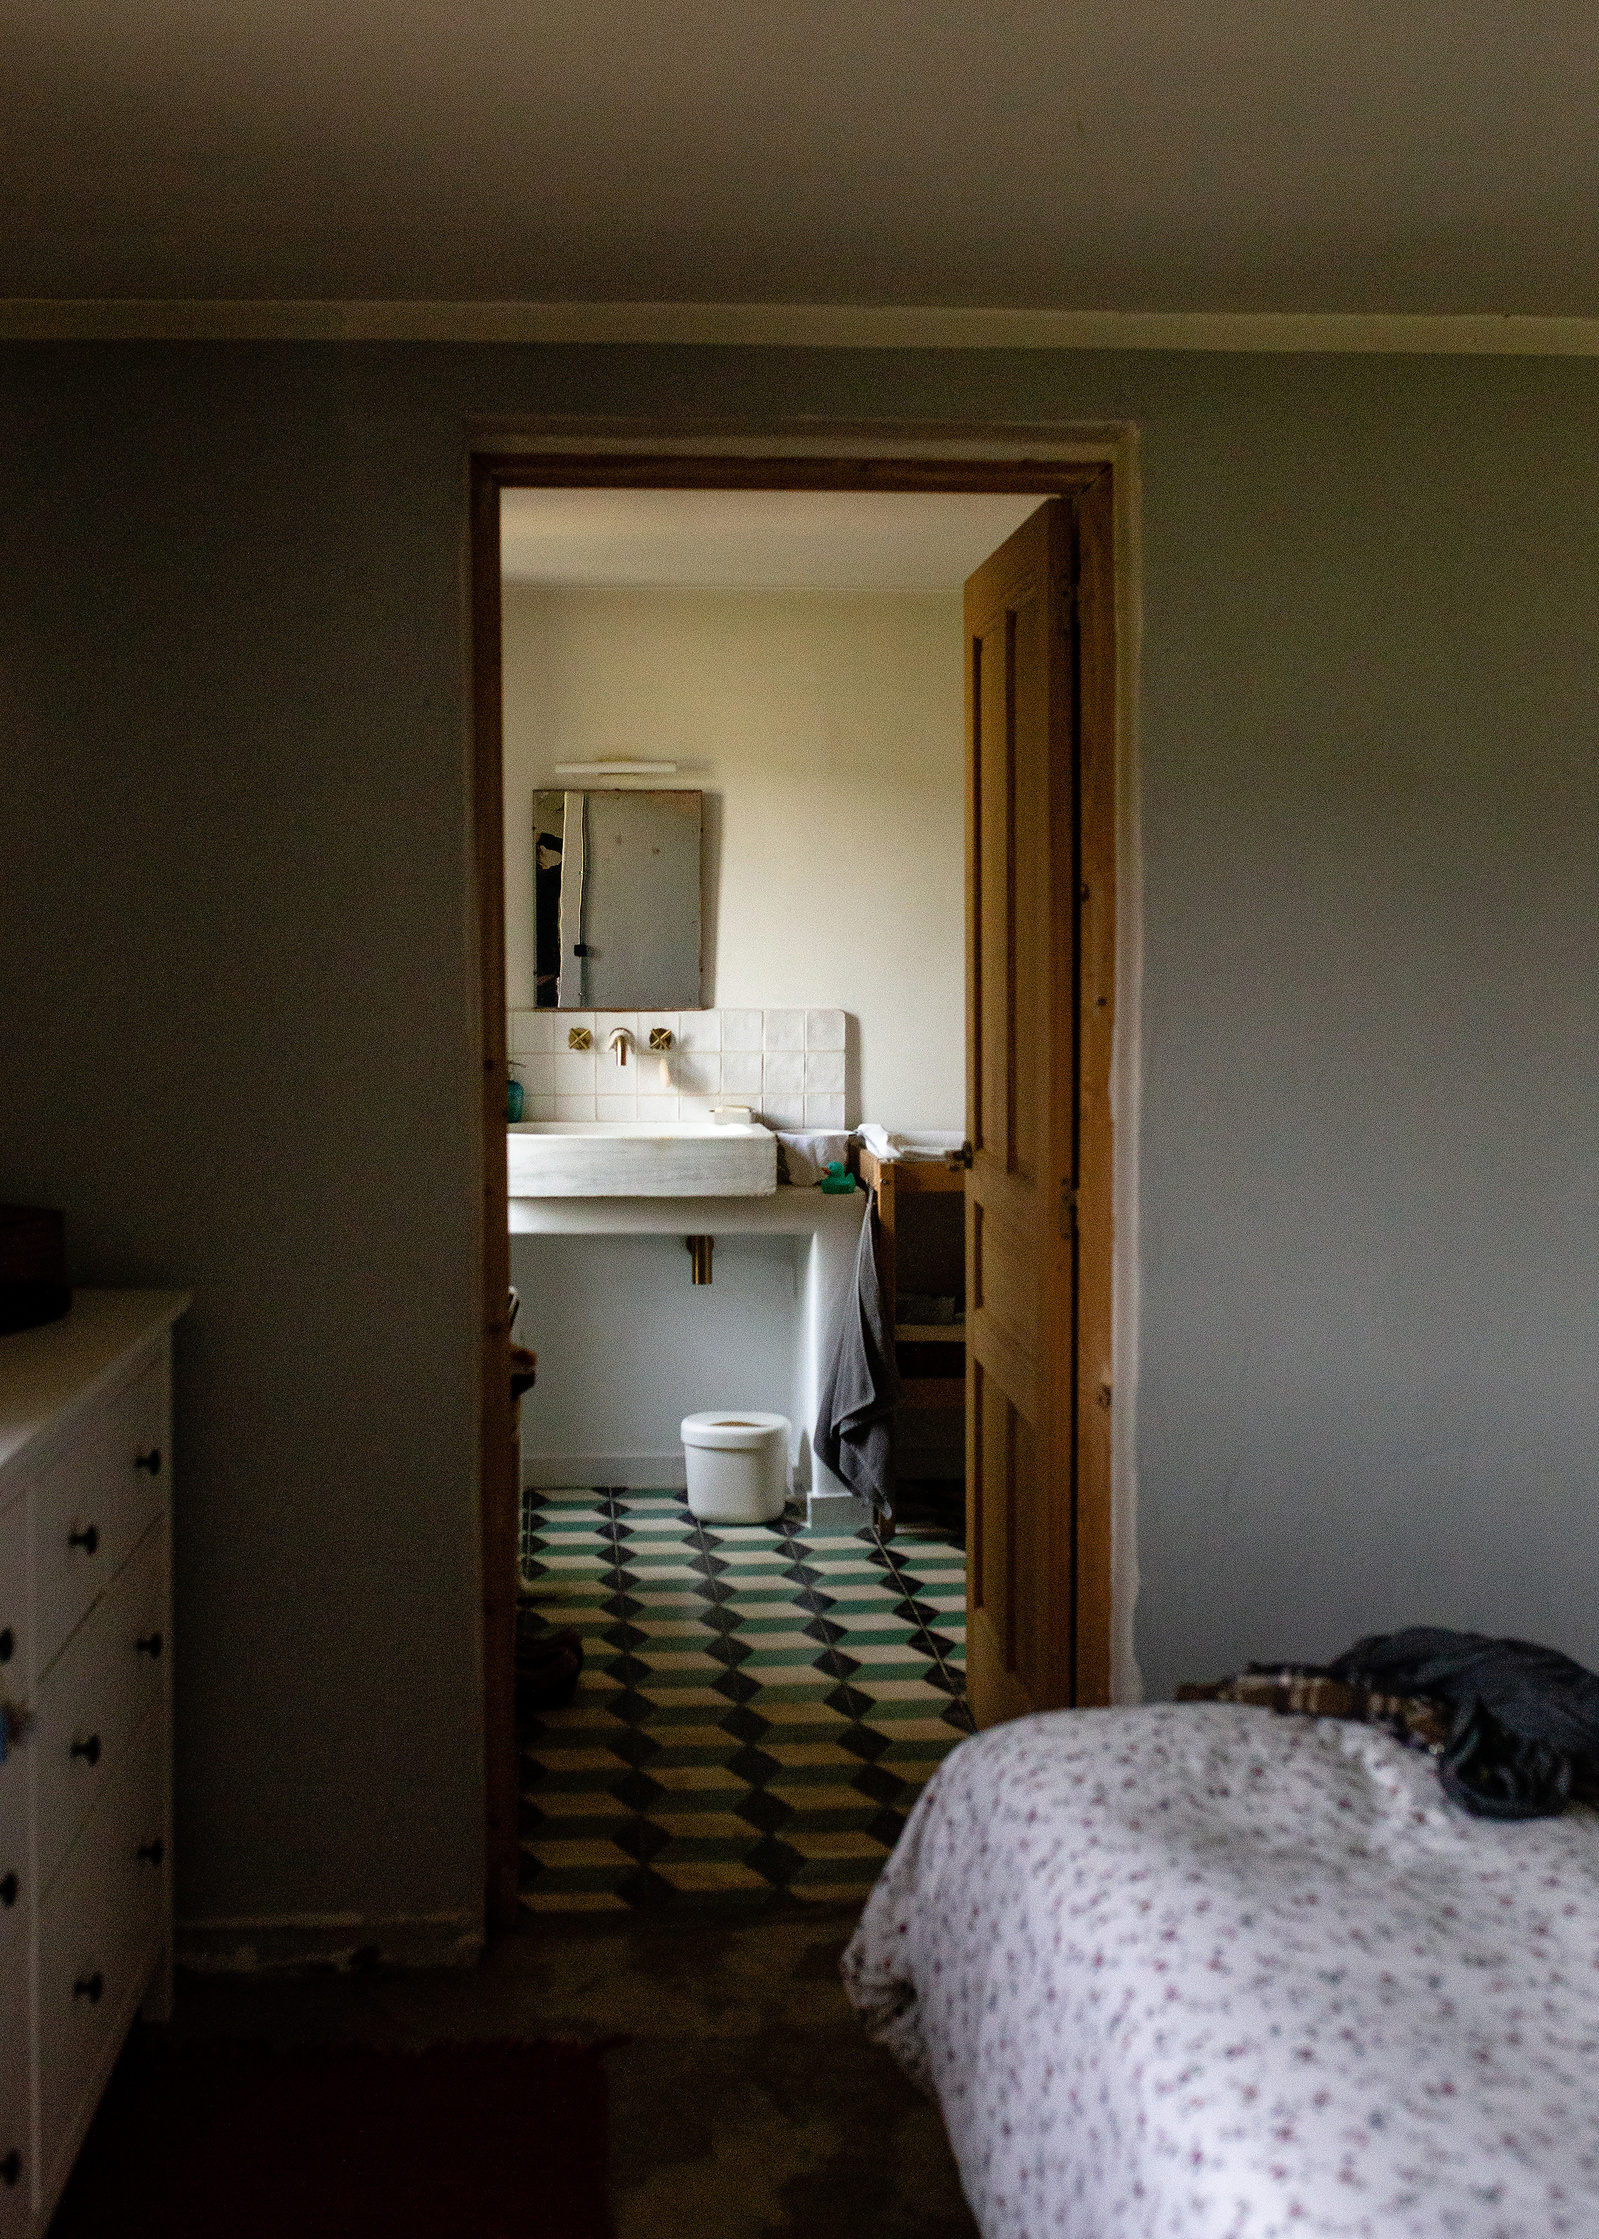 vista de parte de la habitación de dormir y de la sala de baño, Manuela Franjou. fotografia de familia